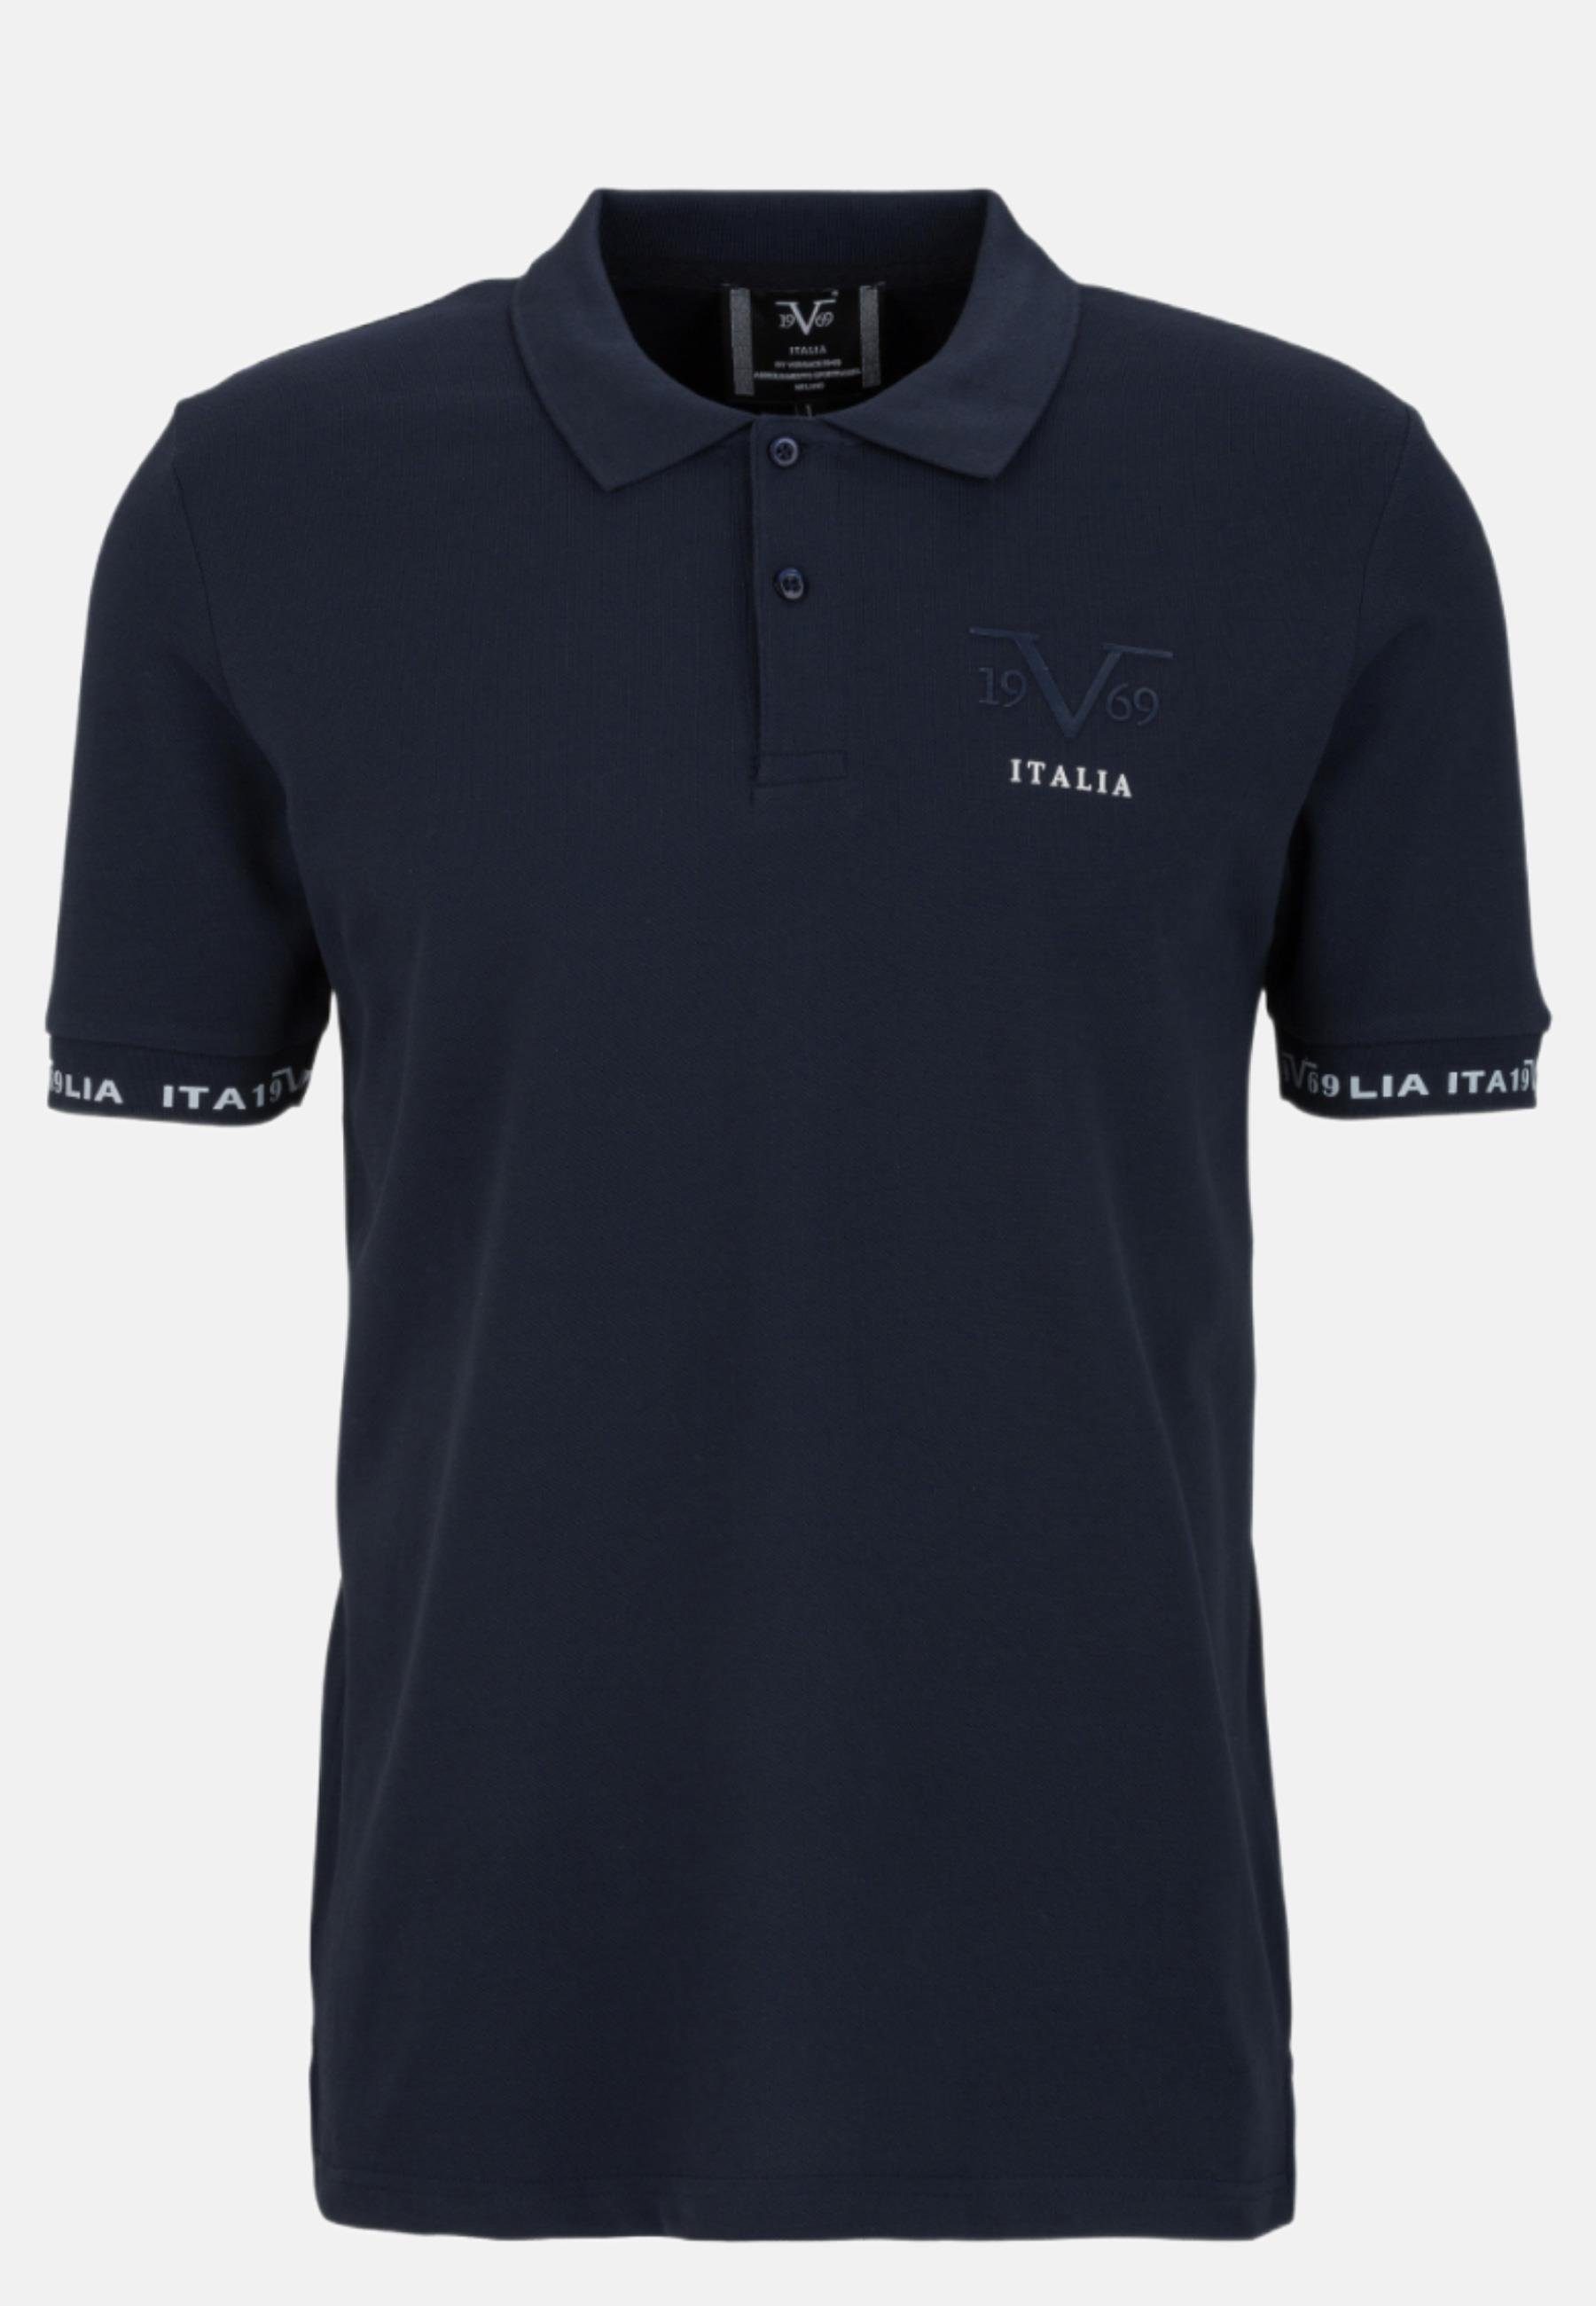 19V69 Italia by Versace T-Shirt Polo Shirt Harry blau